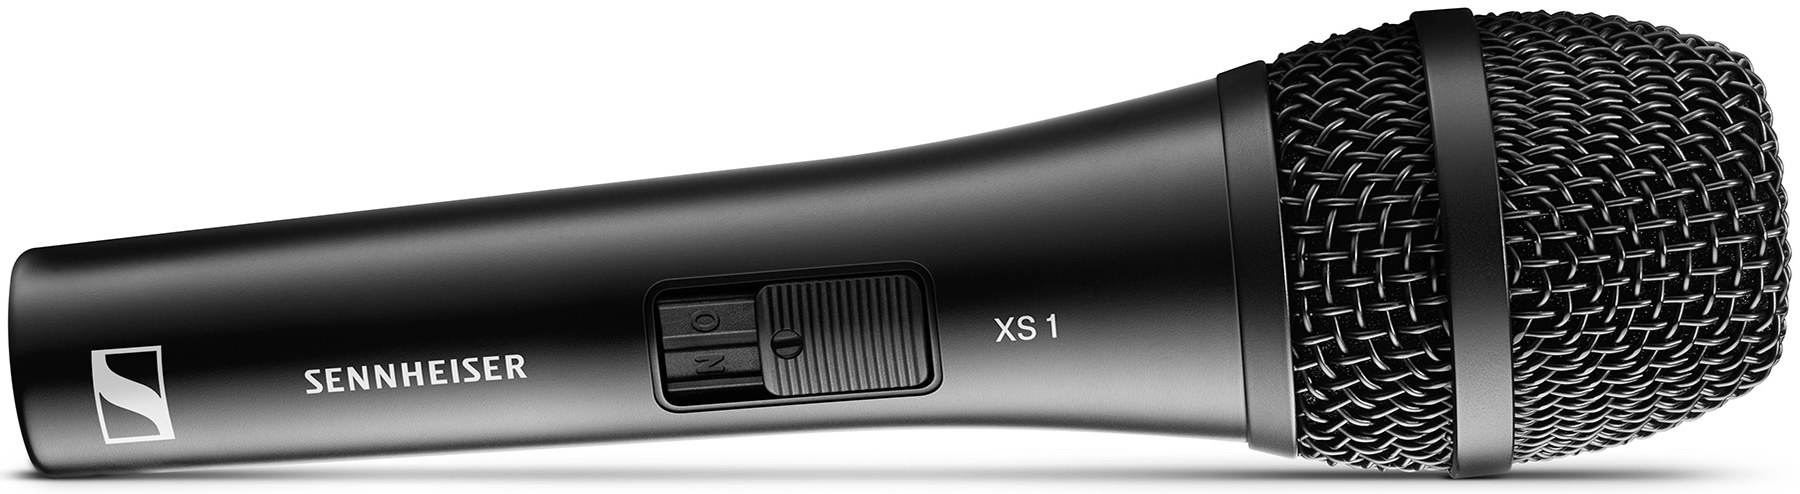 SENNHEISER XS 1 - динамический вокальный микрофон